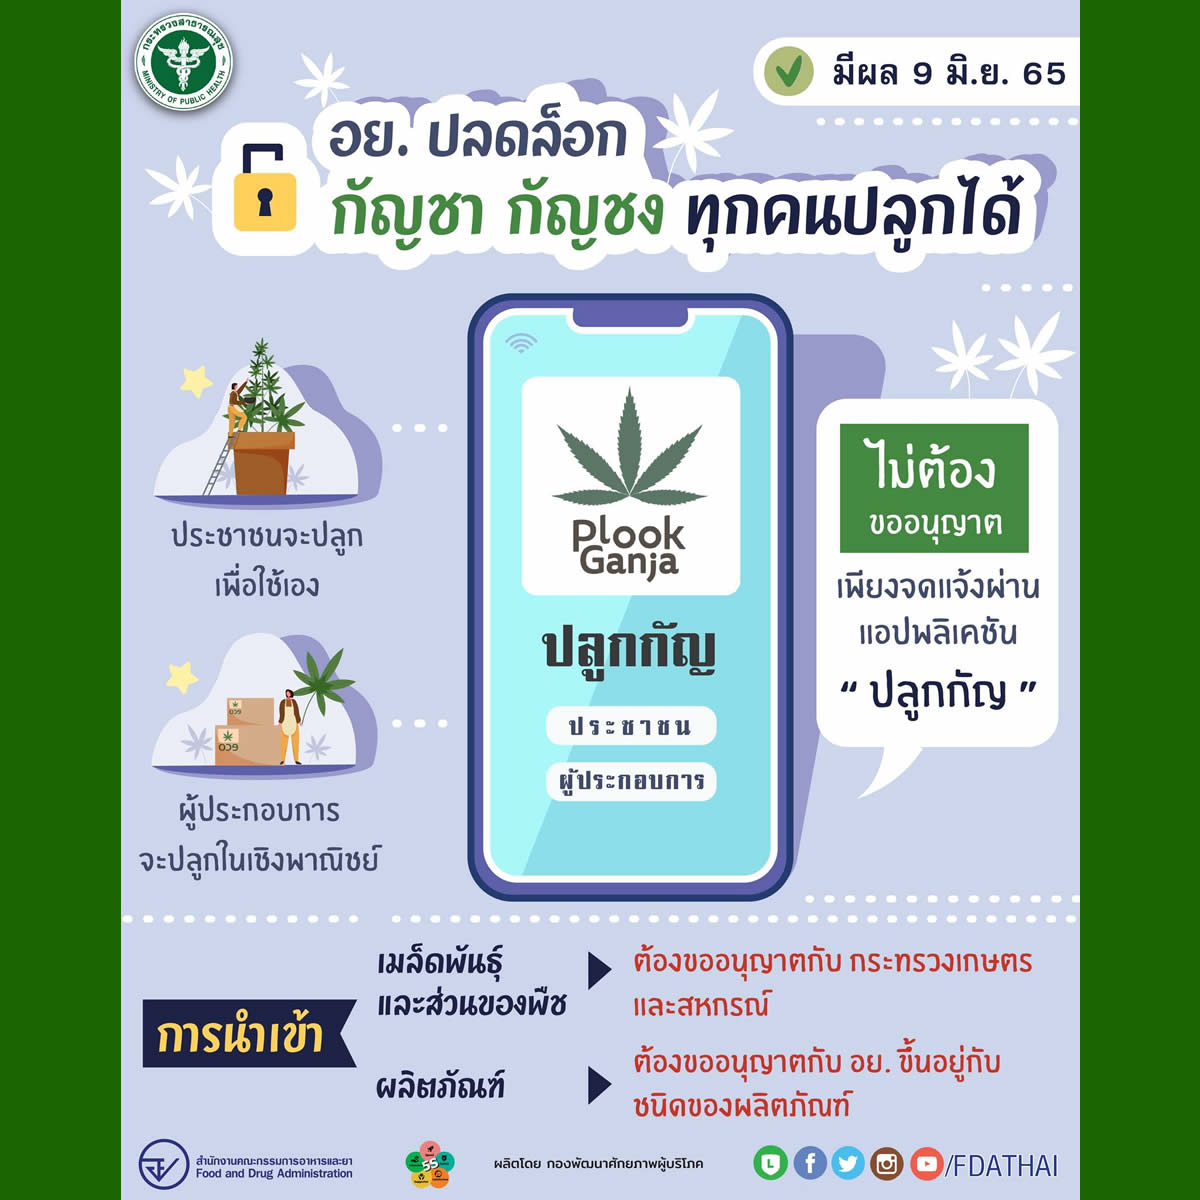 タイ食品医薬品局（FDA）「6月9日から大麻の栽培は許可不要、アプリで報告」